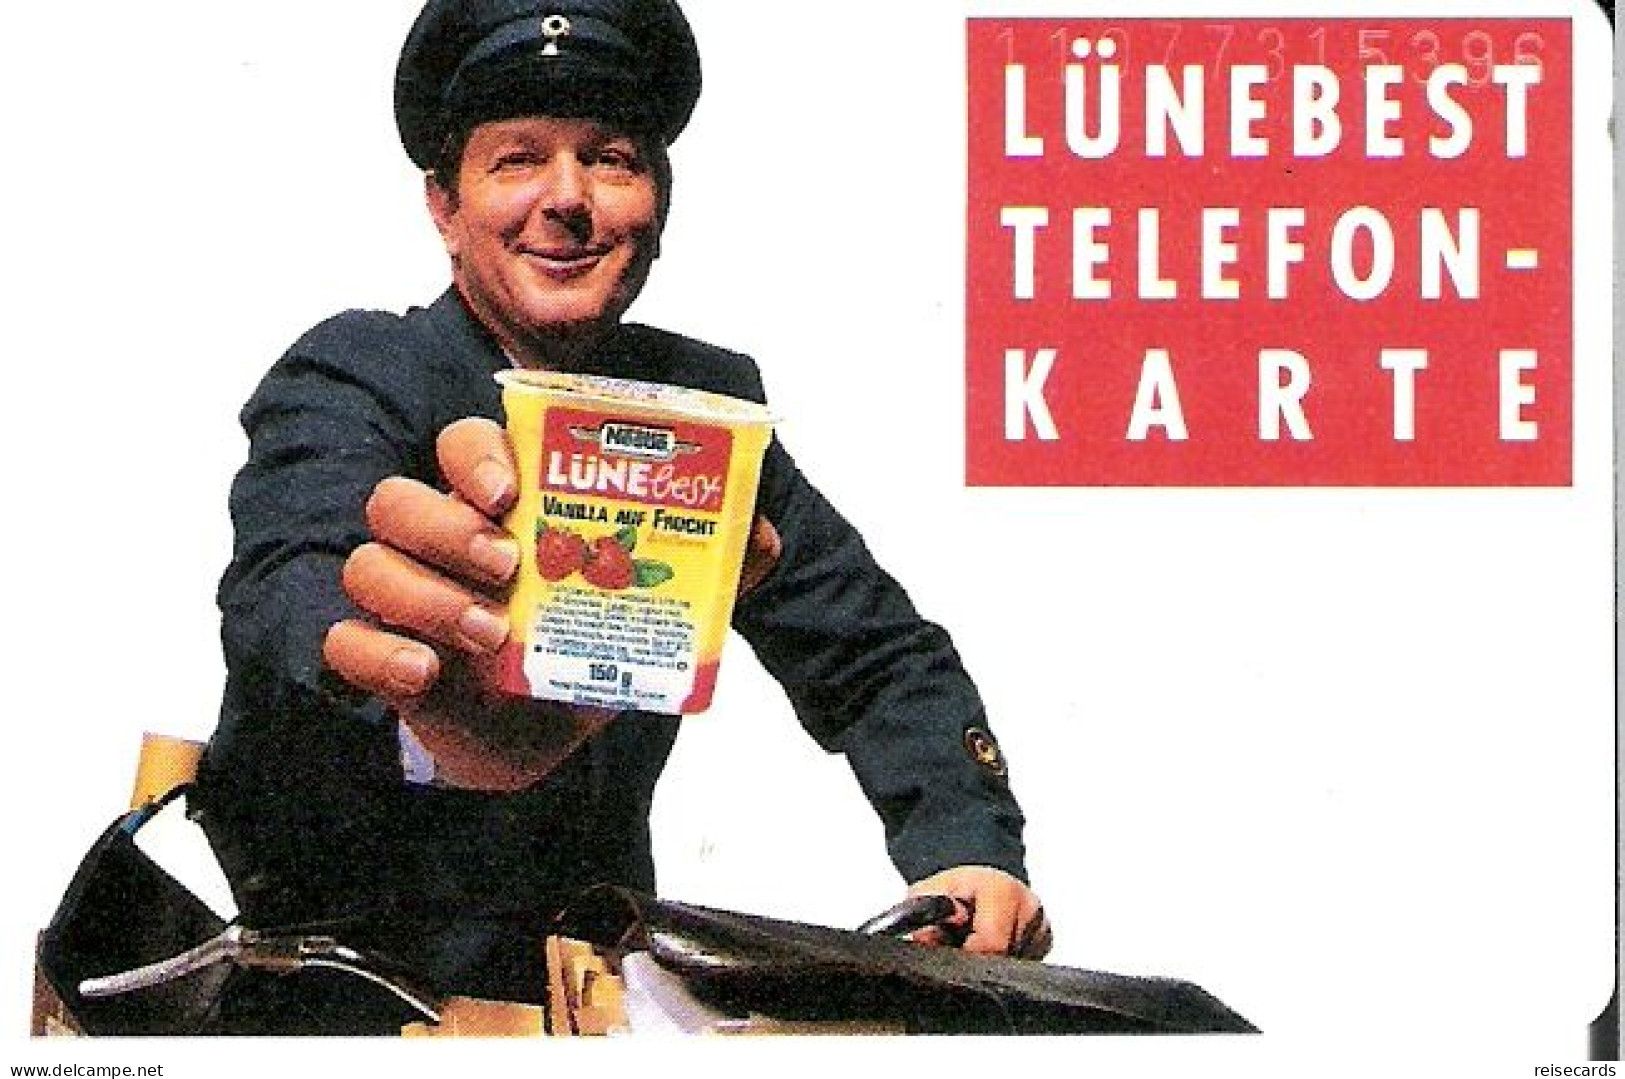 Germany: K 369 07.91 Lünebest (Nestlé). Mint - K-Series: Kundenserie